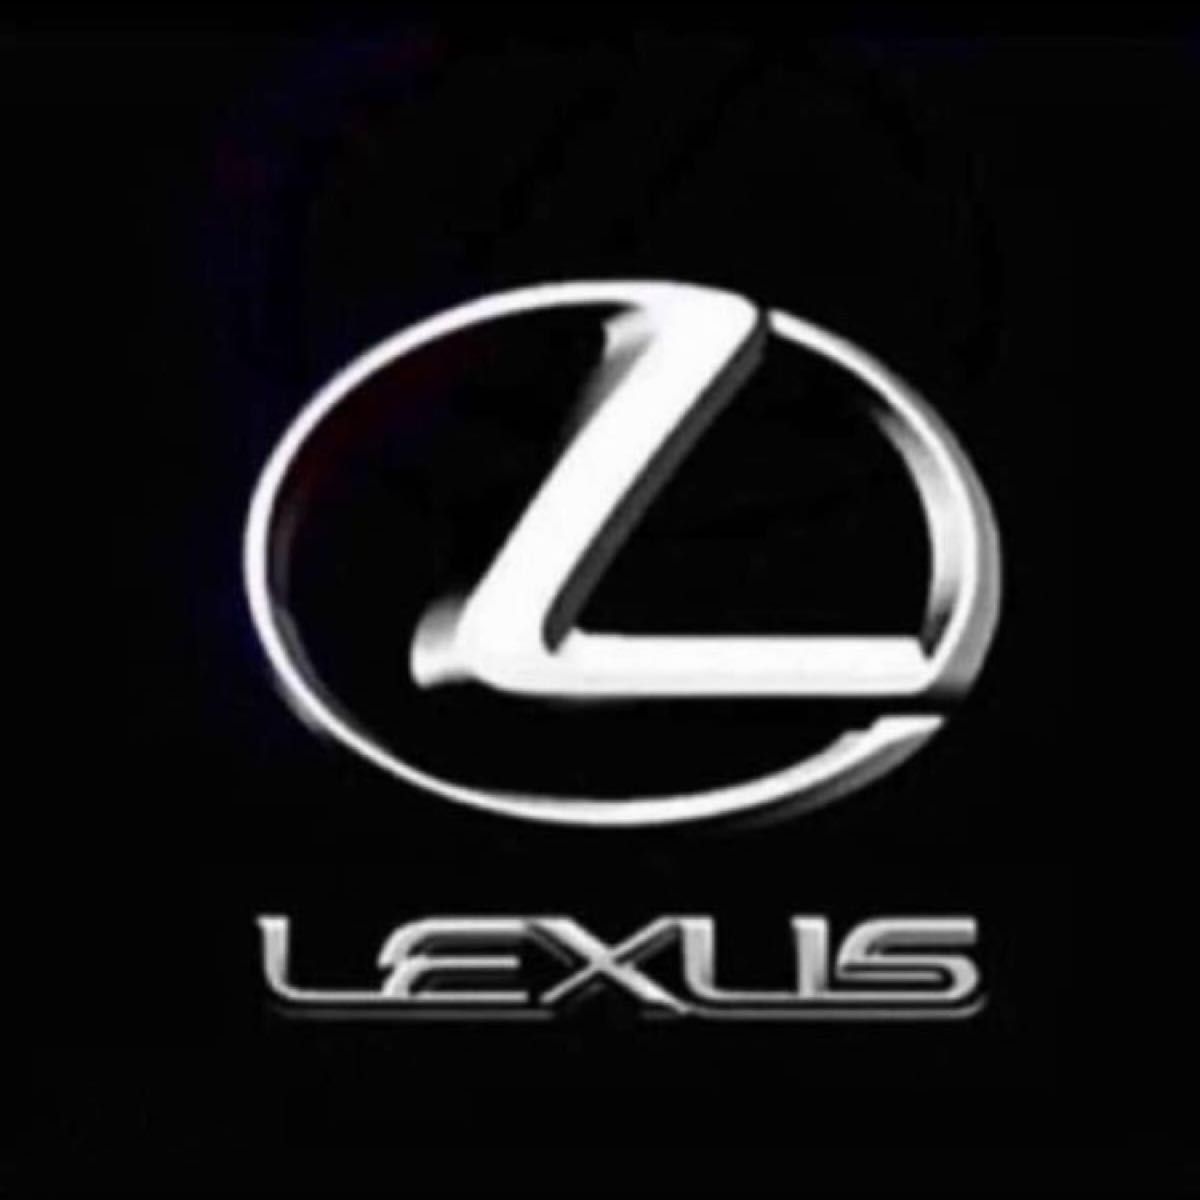 ■新品未使用■ 希少！レクサス LEXUS スピンドル 今治タオル認定『オリジナルマフラータオル』ホワイト×ブラック 送料無料！